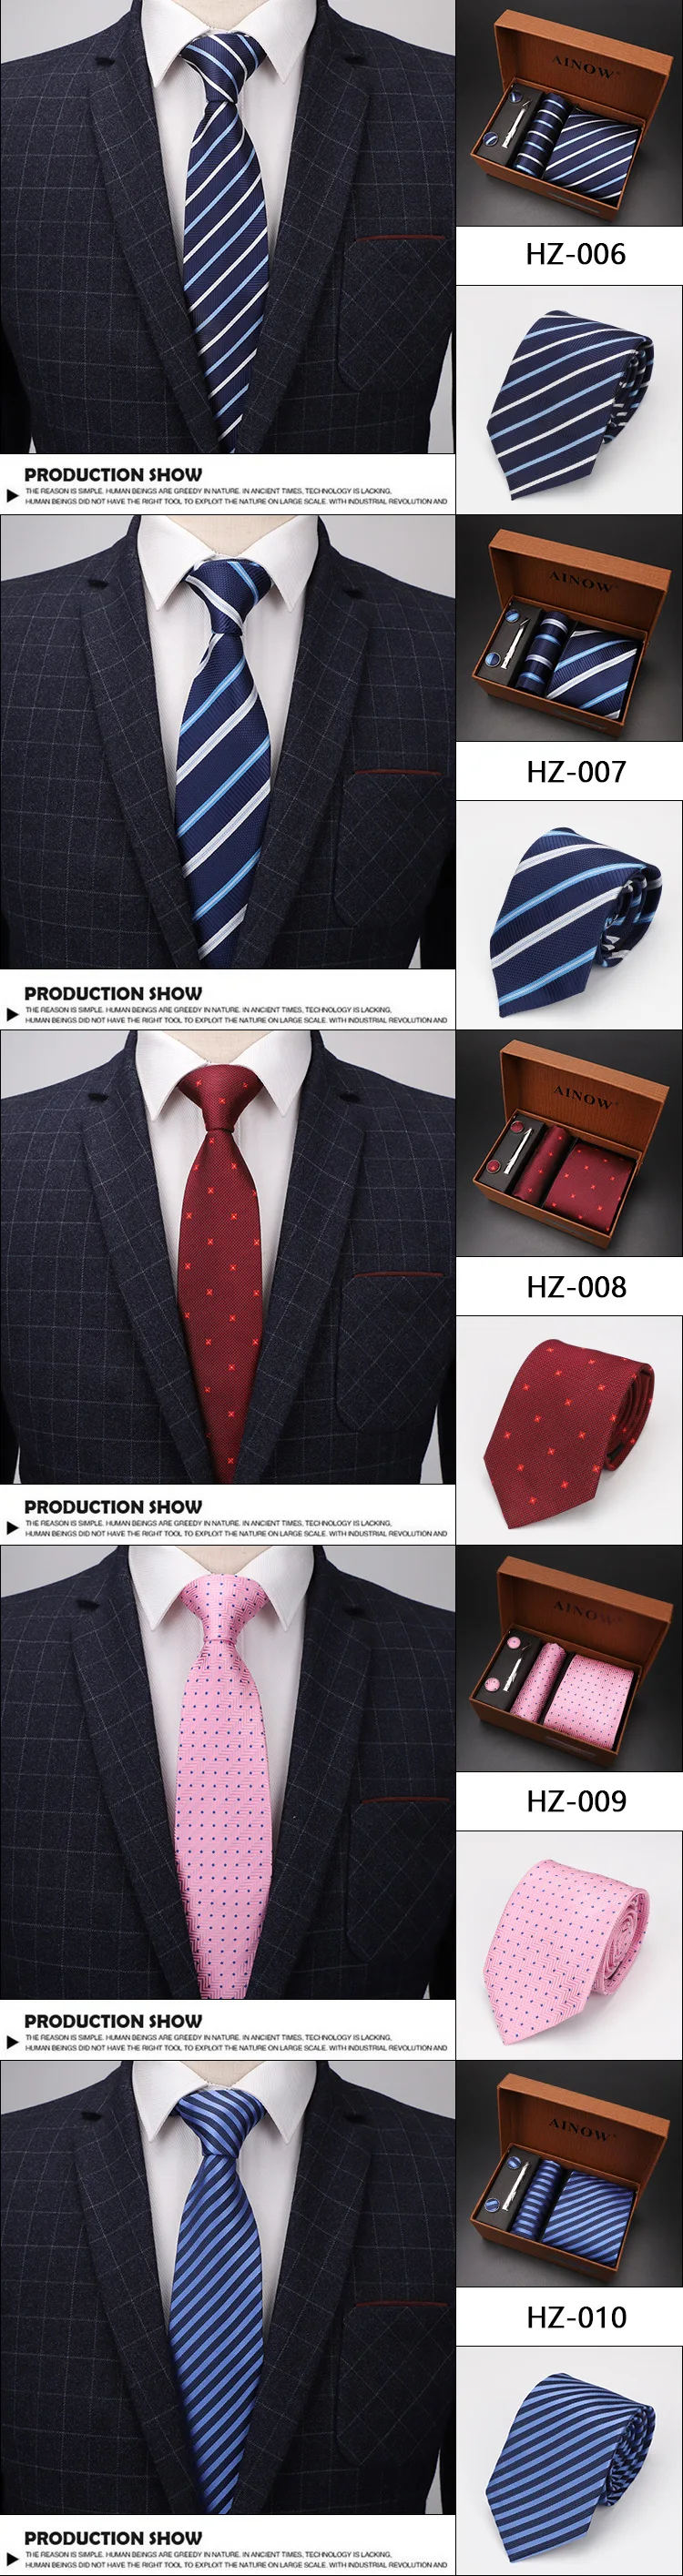 Роскошный Галстук Набор подарочных коробок для мужчин жаккардовый галстук и карман зажим прямоугольный запонки красный черный синий платок формальное платье